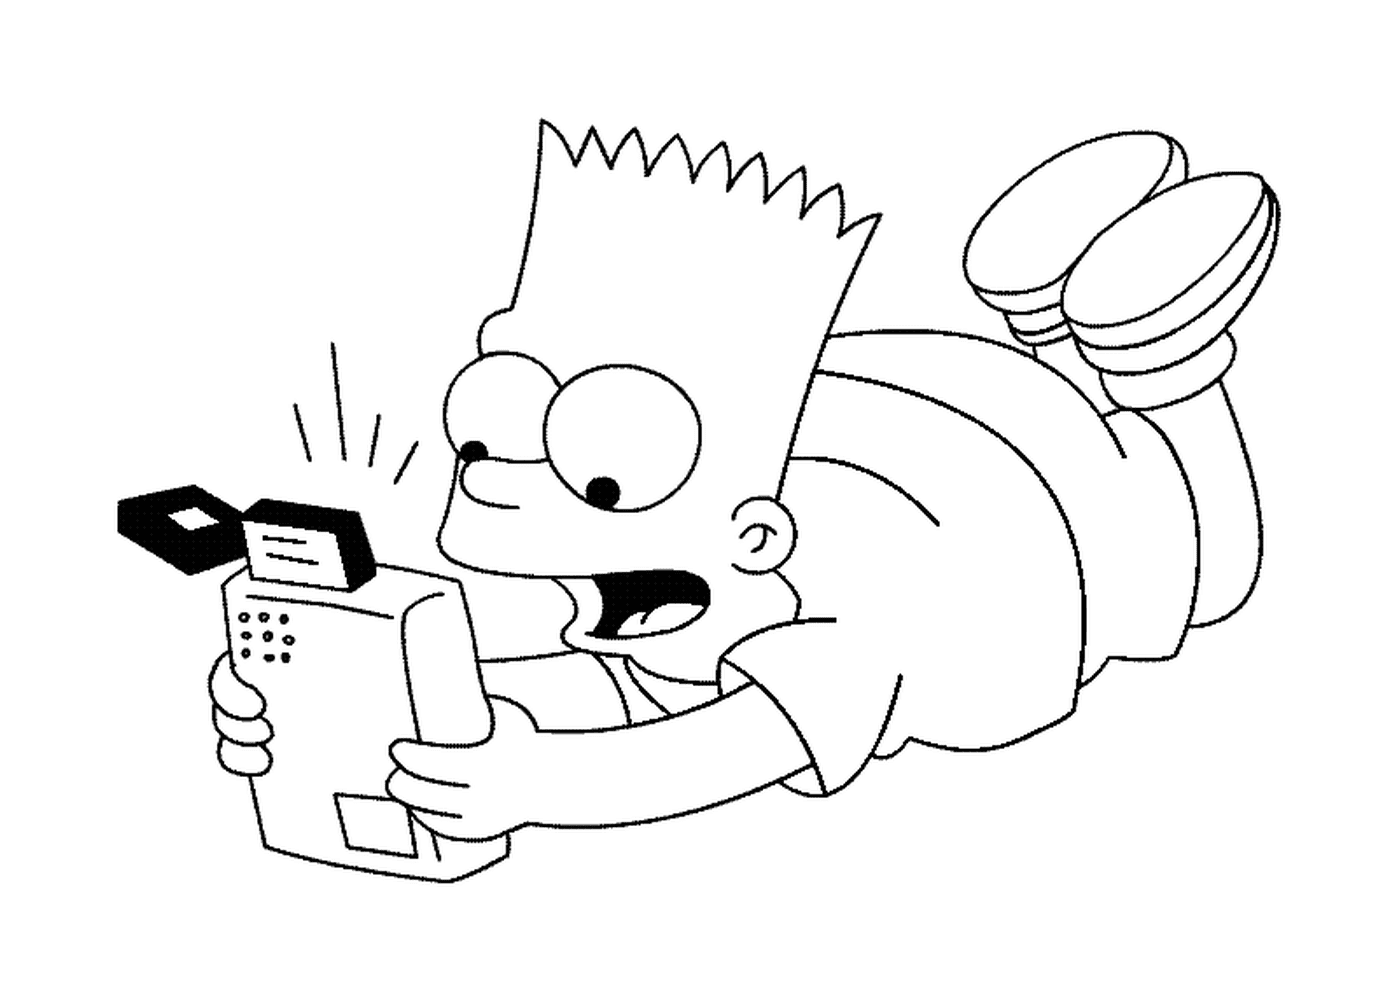  Bart joga com um console de jogos 